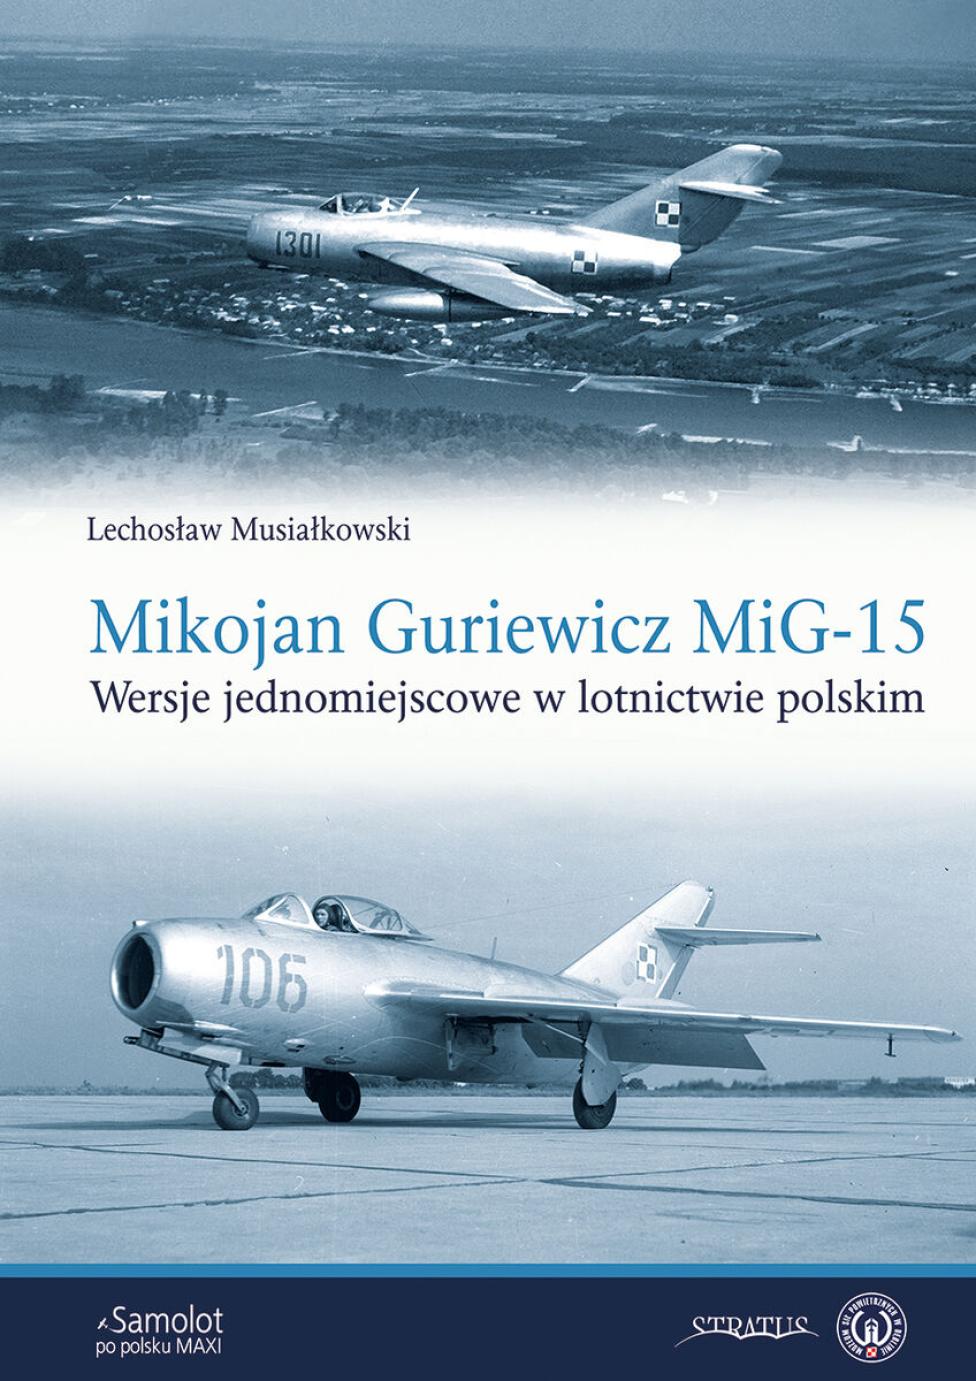 Książka "Mikojan Gurewicz MiG-15. Wersje jednomiejscowe w lotnictwie polskim" (fot. Wydawnictwo Strarus)